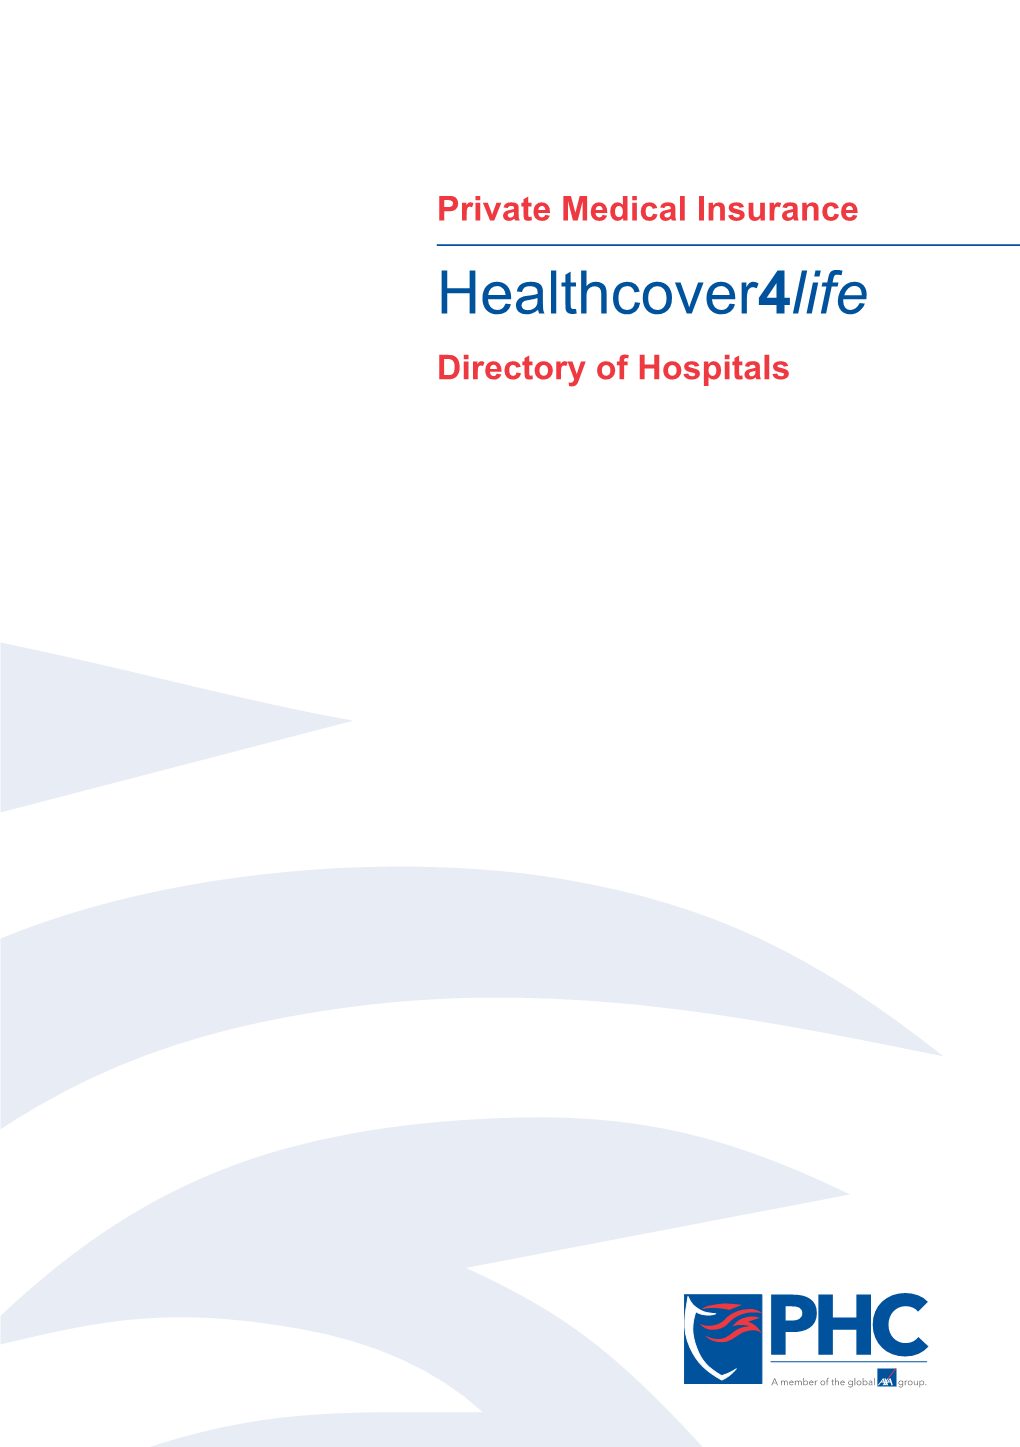 Directory of Hospitals Contents